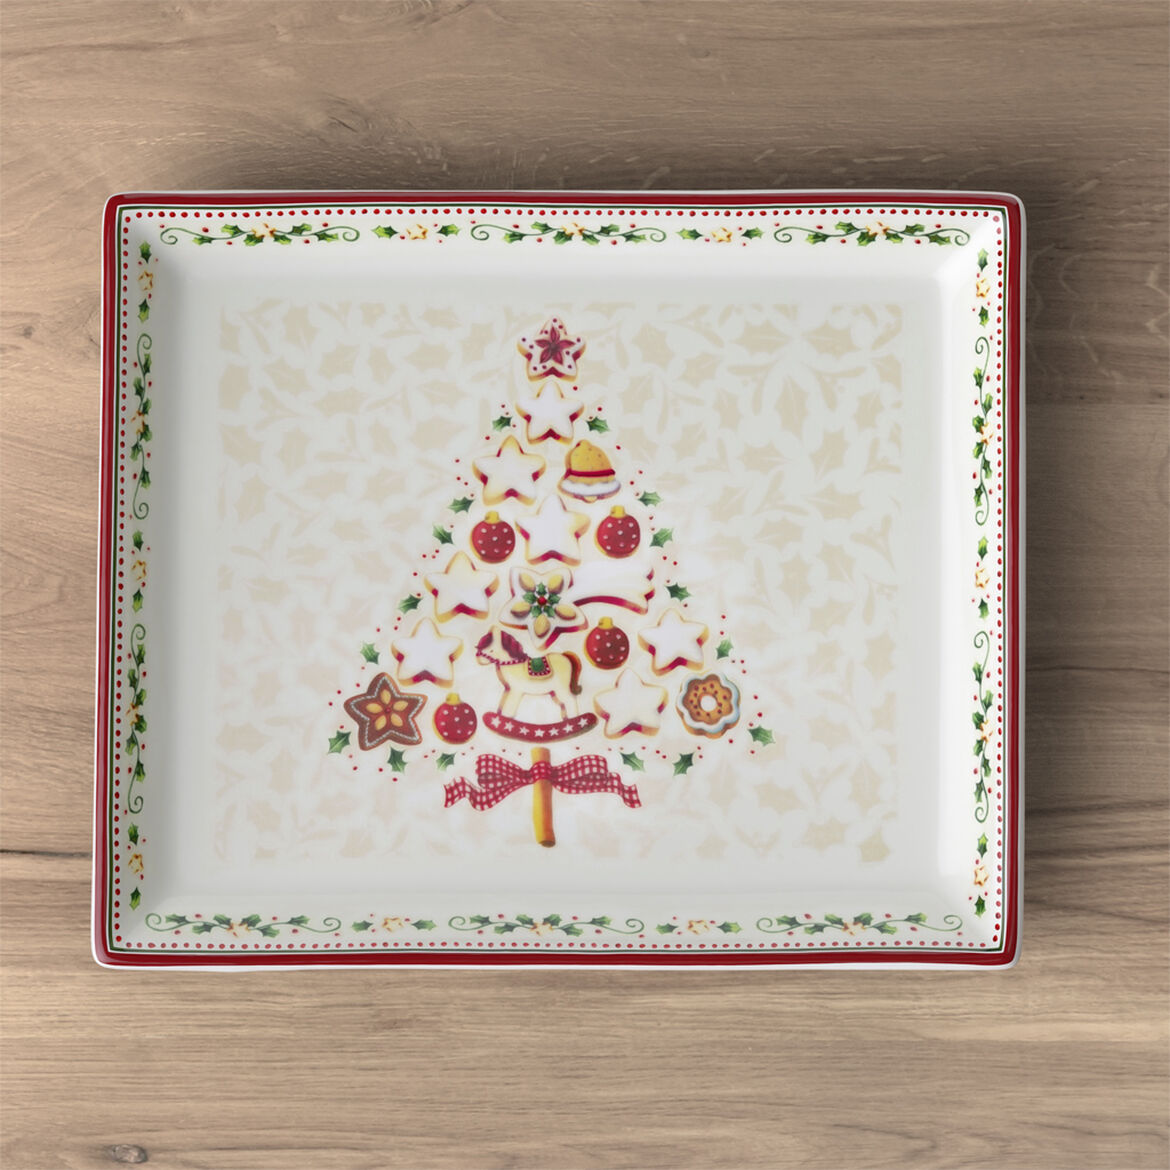 VILLEROY & BOCH Winter Bakery Delight Piatto Pasticcini 27x22,5cm Tavola di Natale